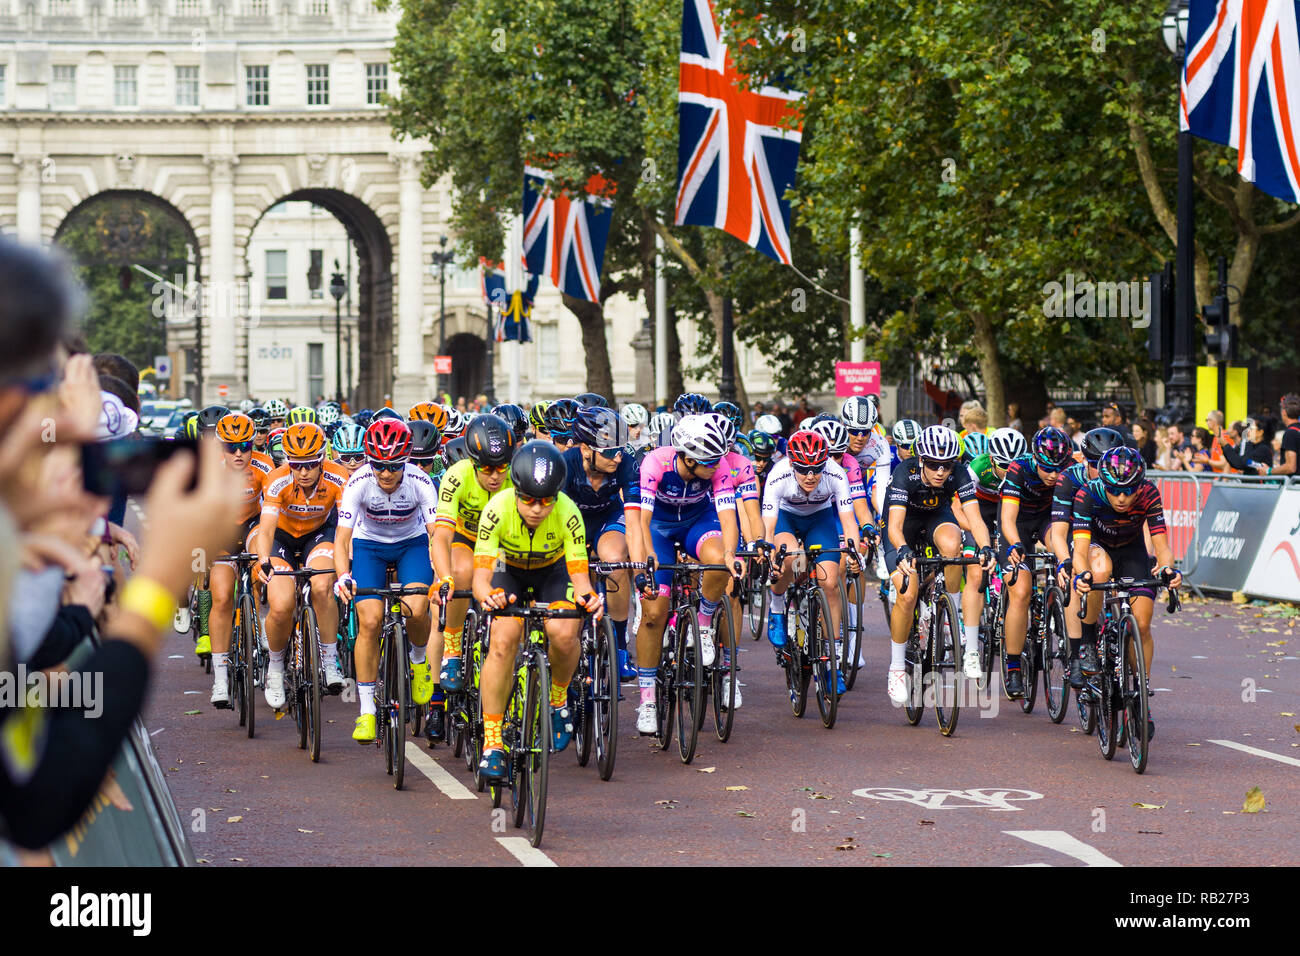 Los ciclistas en el Prudential RideLondon 2018 carrera ciclismo abajo el Mall antes del inicio de la carrera, Londres, Reino Unido. Foto de stock